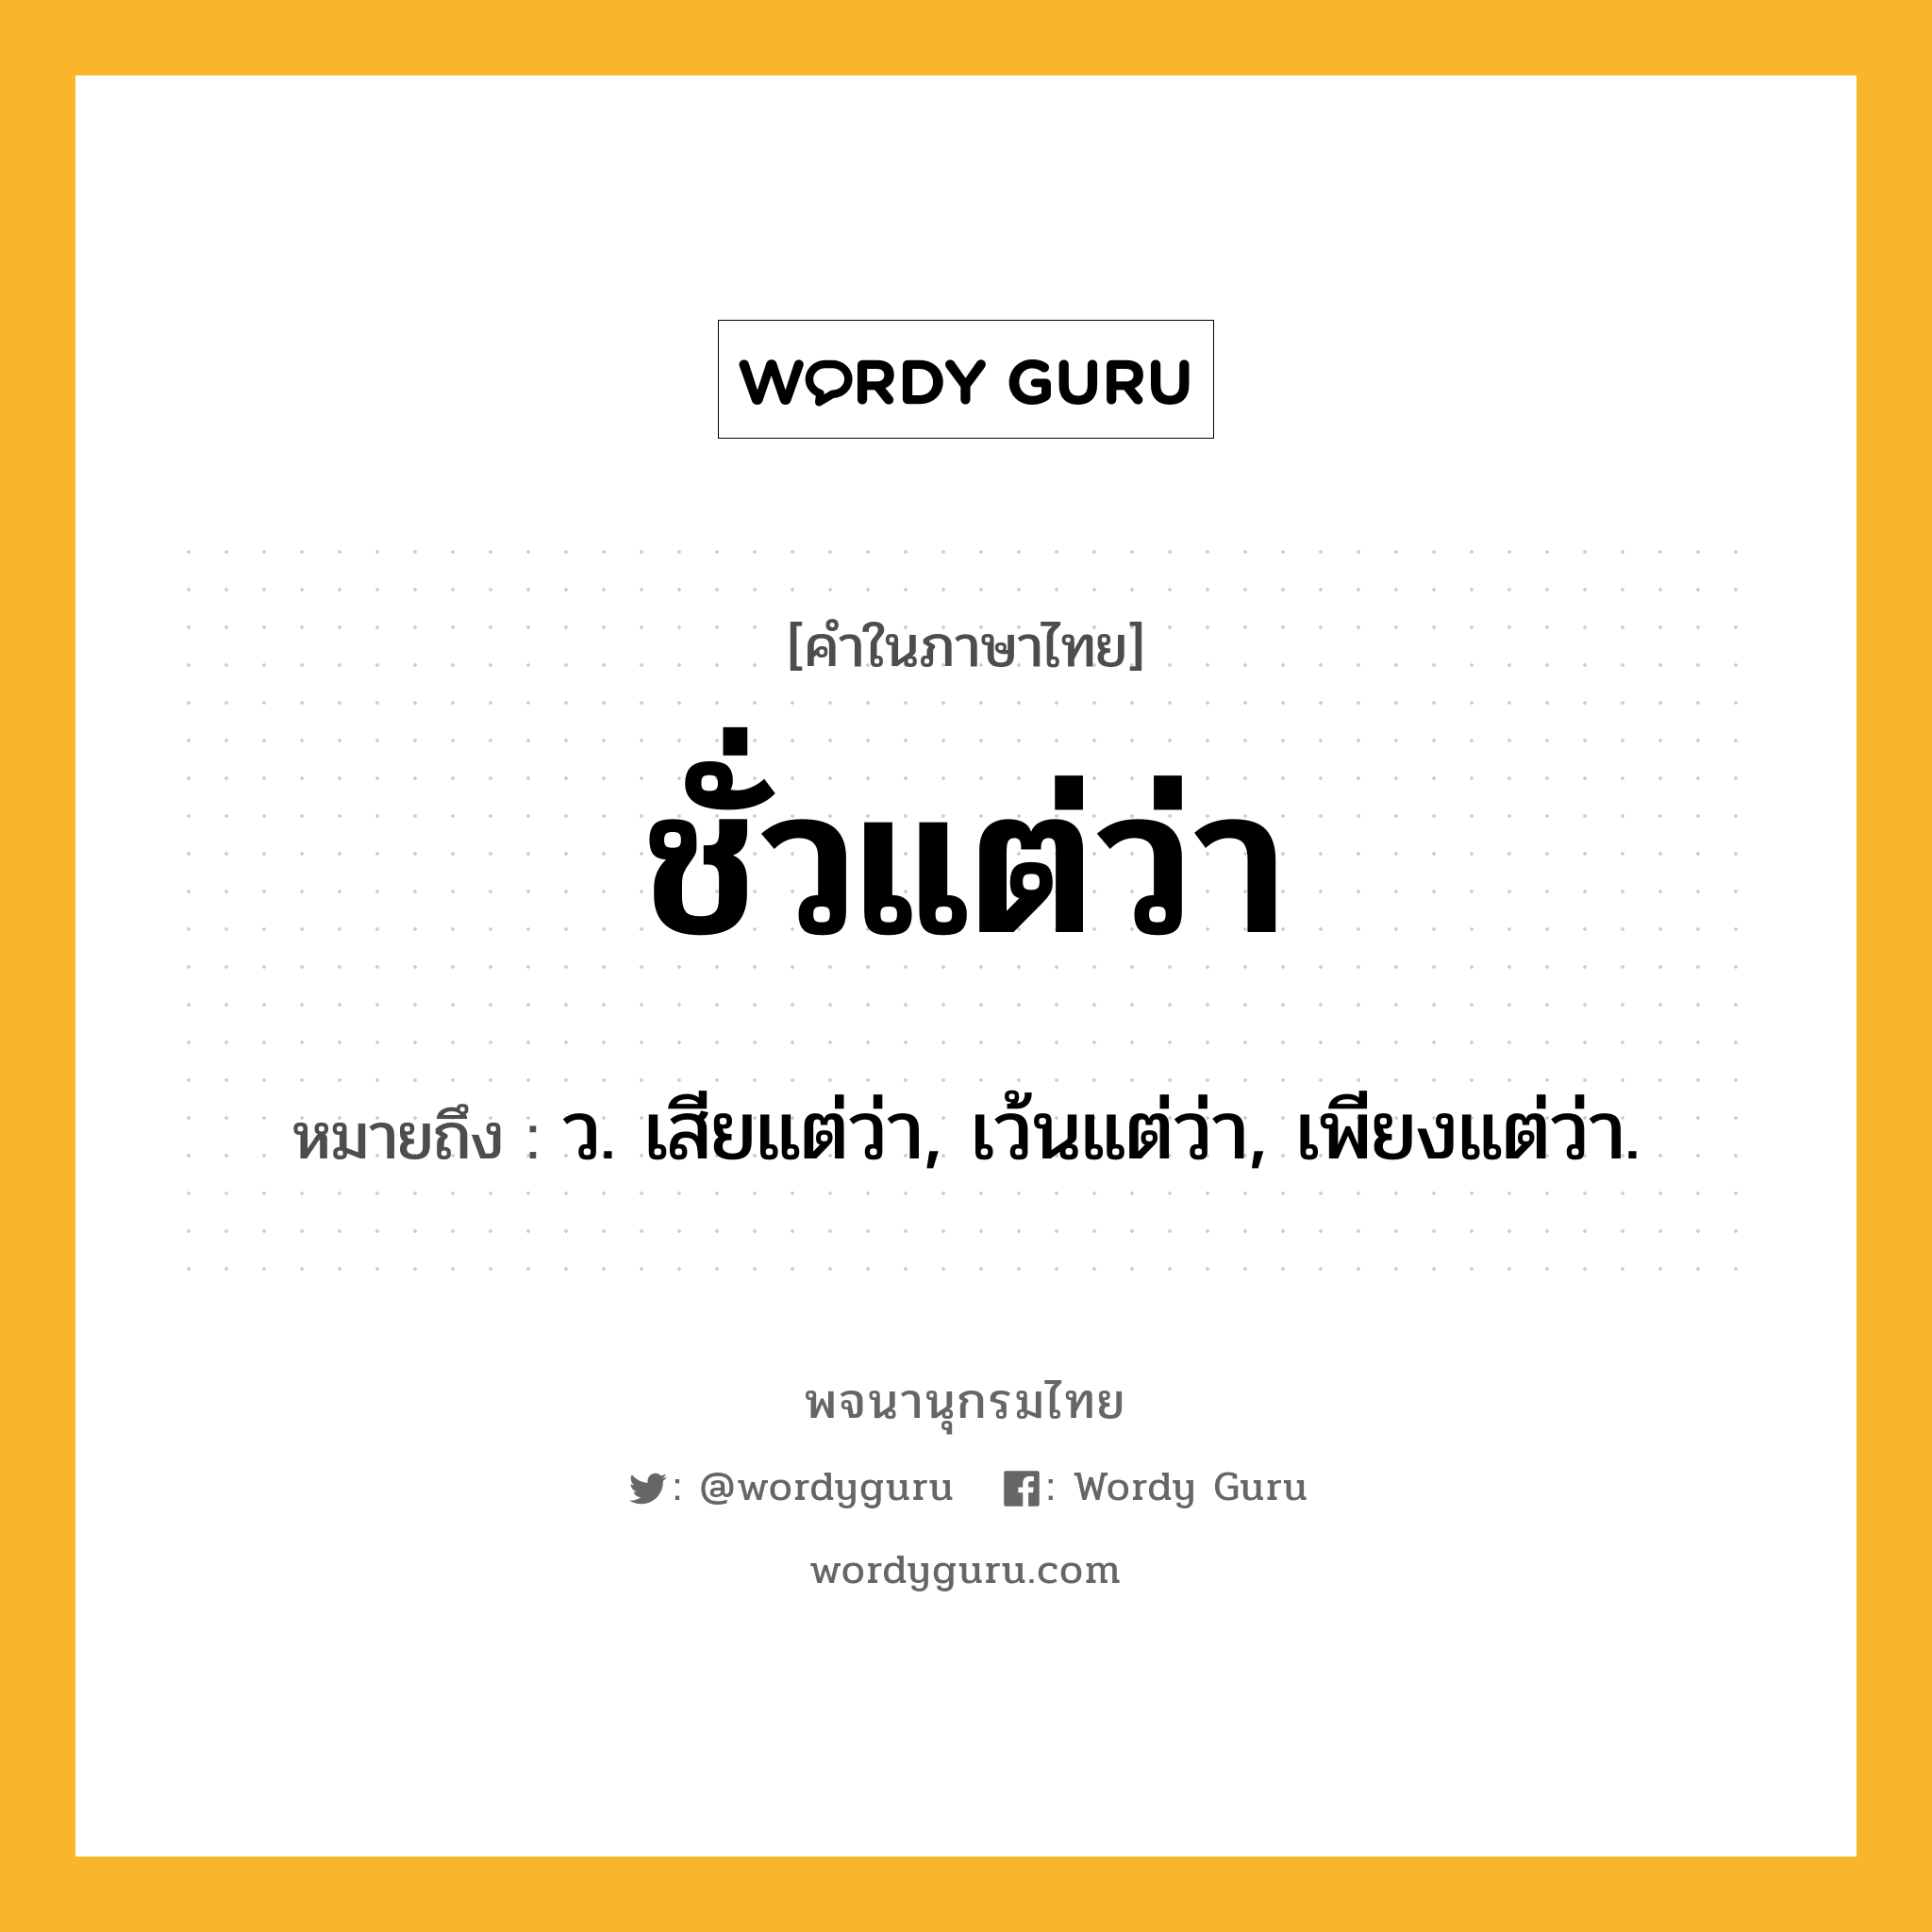 ชั่วแต่ว่า ความหมาย หมายถึงอะไร?, คำในภาษาไทย ชั่วแต่ว่า หมายถึง ว. เสียแต่ว่า, เว้นแต่ว่า, เพียงแต่ว่า.